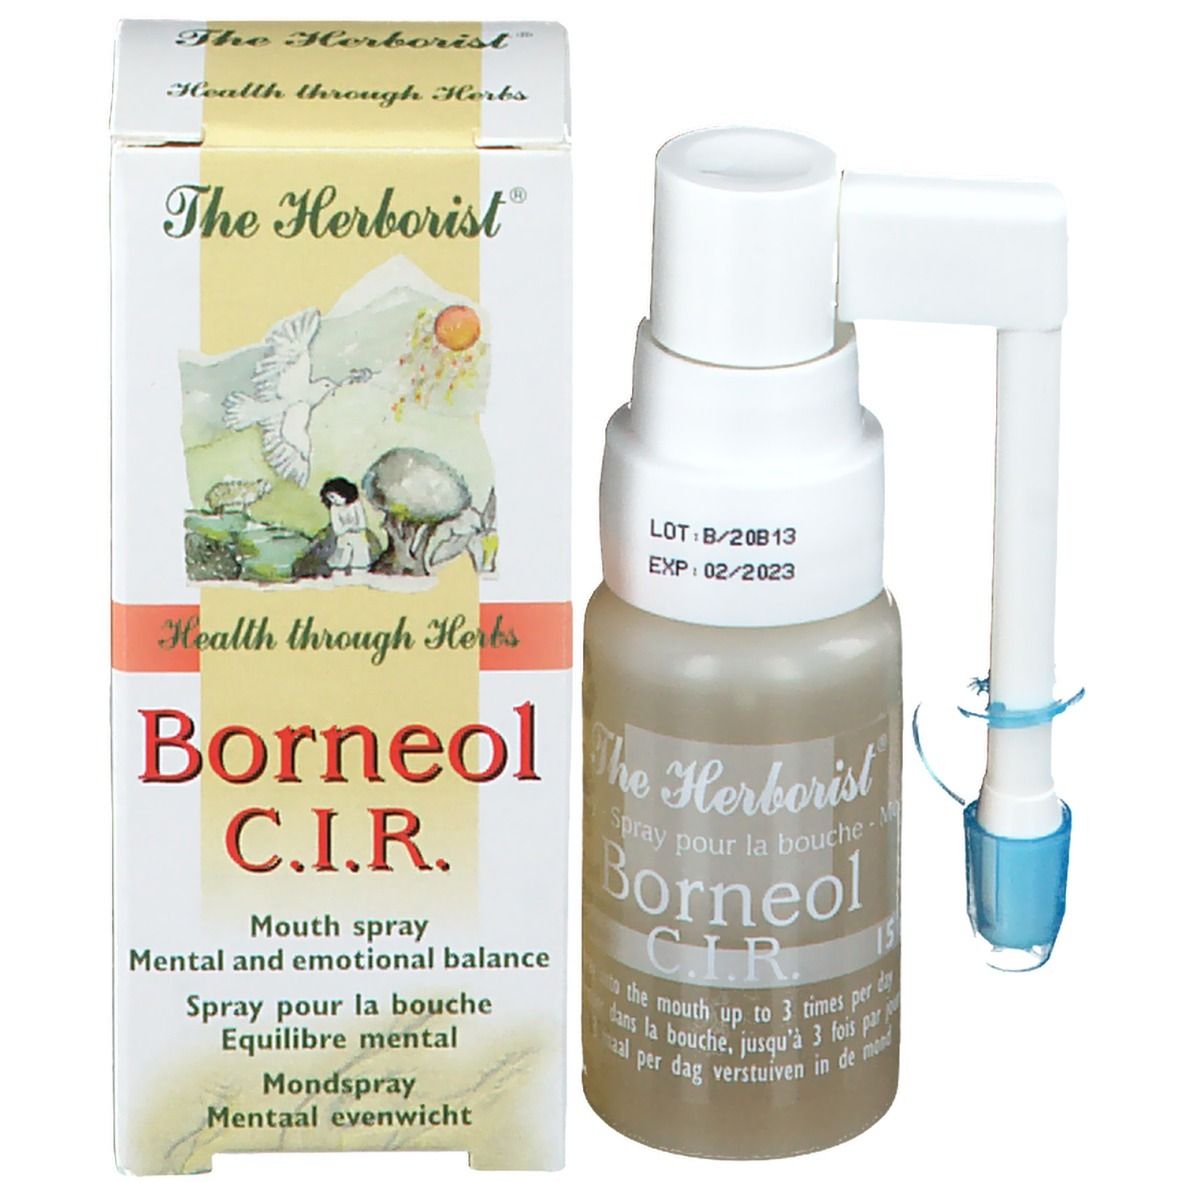 The Herborist® Borneol C.I.R